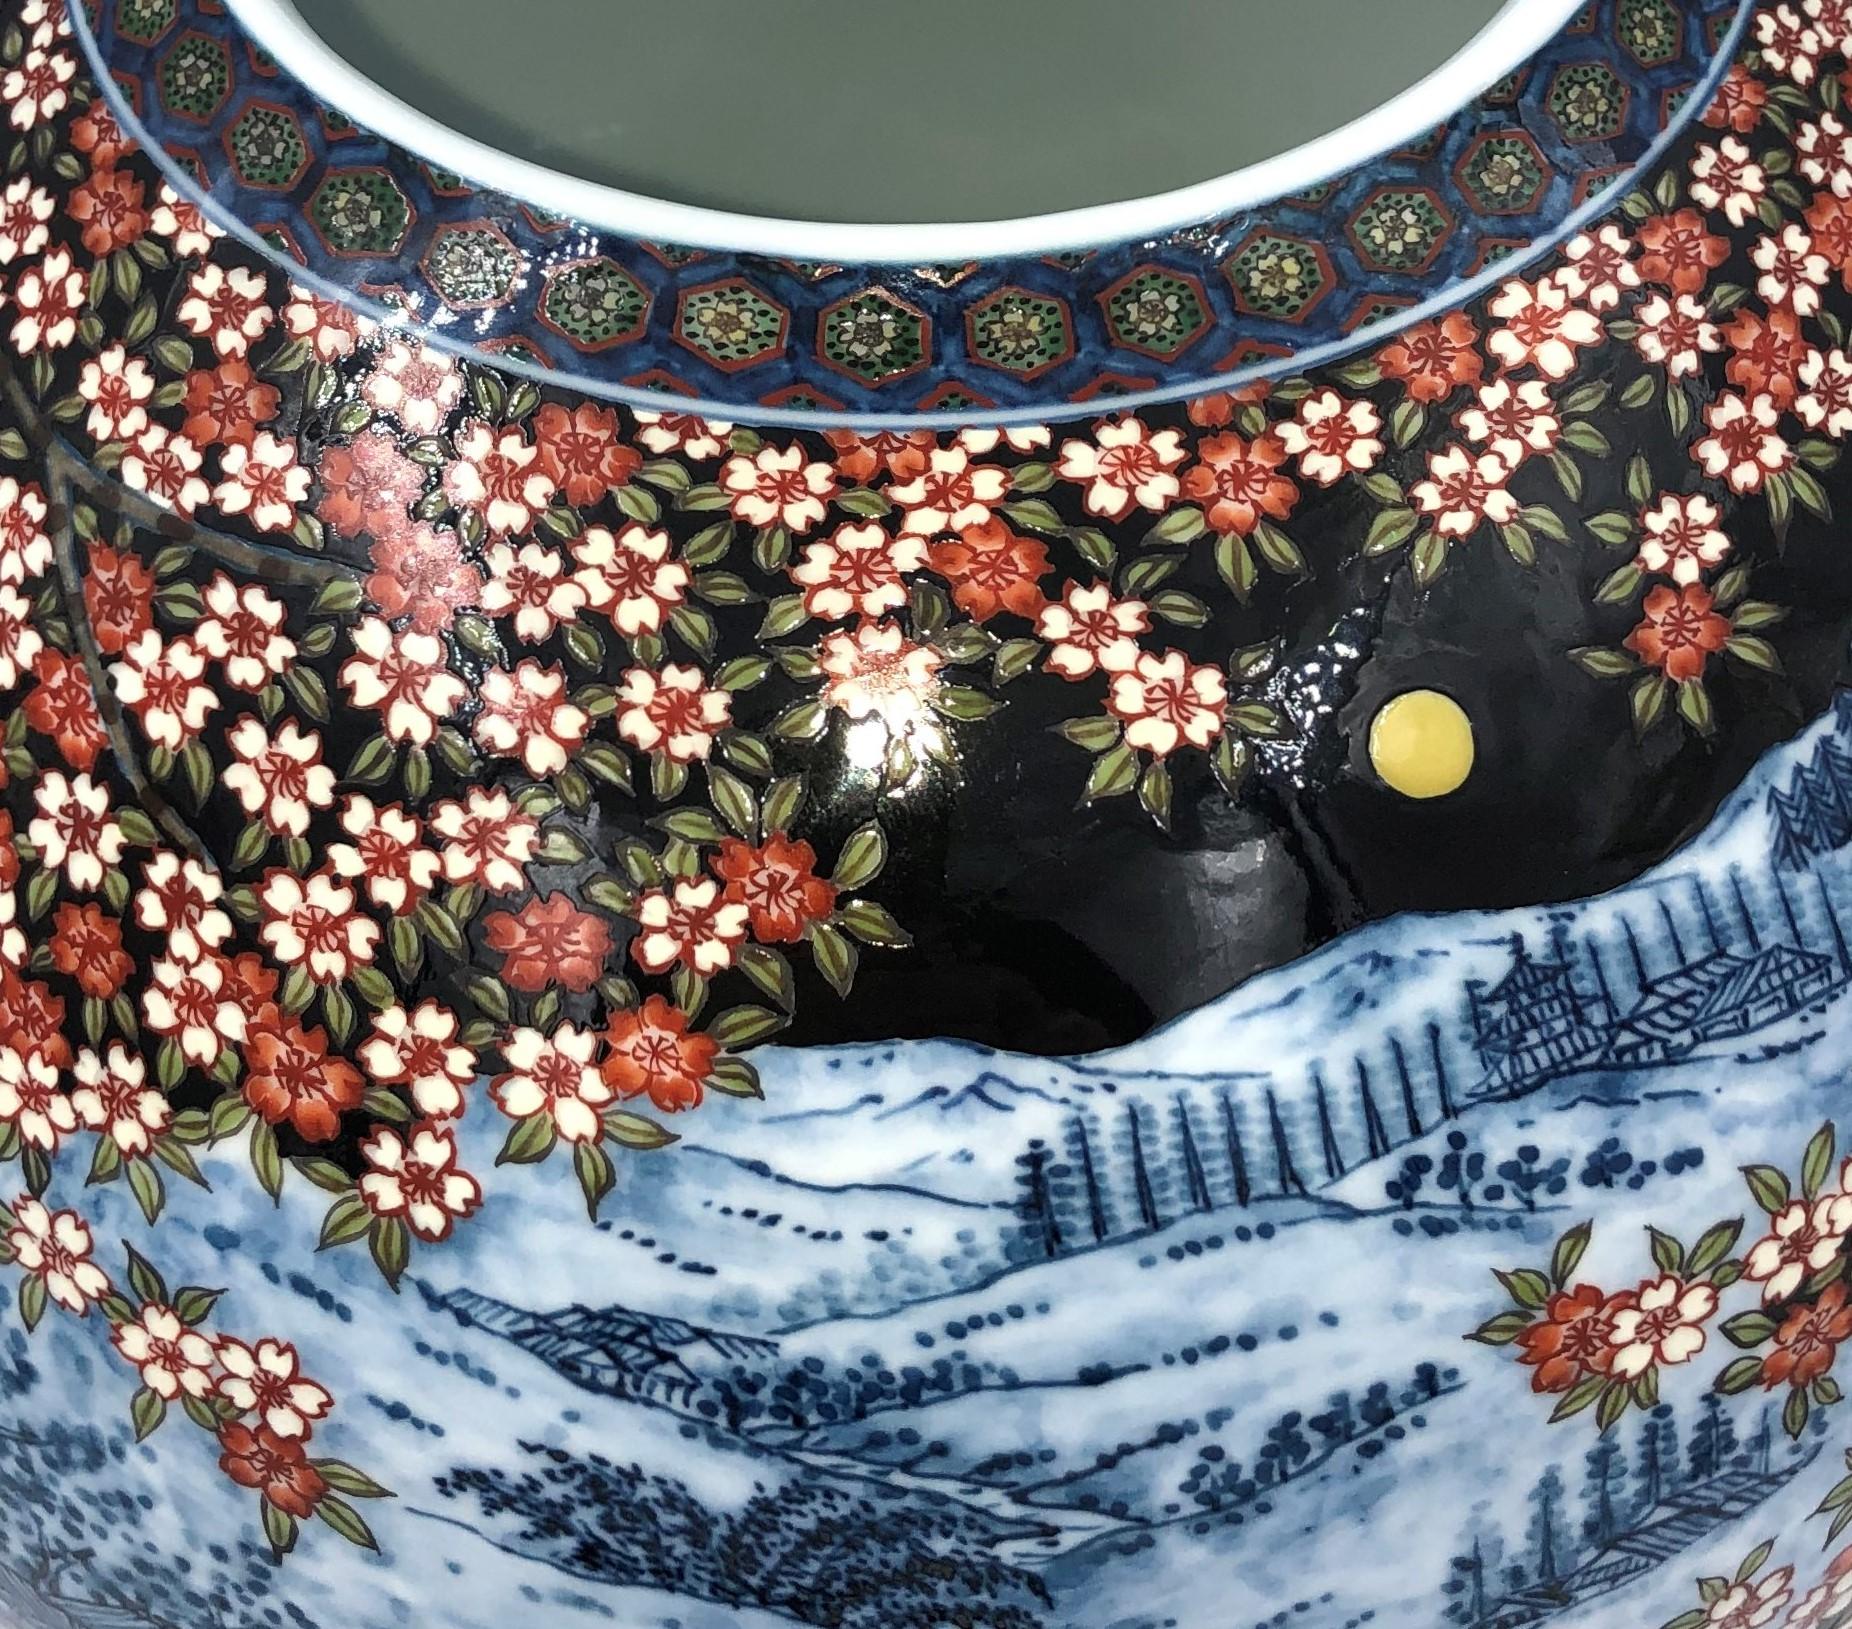 Faszinierende zeitgenössische japanische Porzellanvase in Museumsqualität, aufwändig handbemalt in Schwarz, Blau und Rot vor einem atemberaubenden kugelförmigen Hintergrund in Schwarz. Ein signiertes Meisterwerk des Porzellankünstlers der zweiten